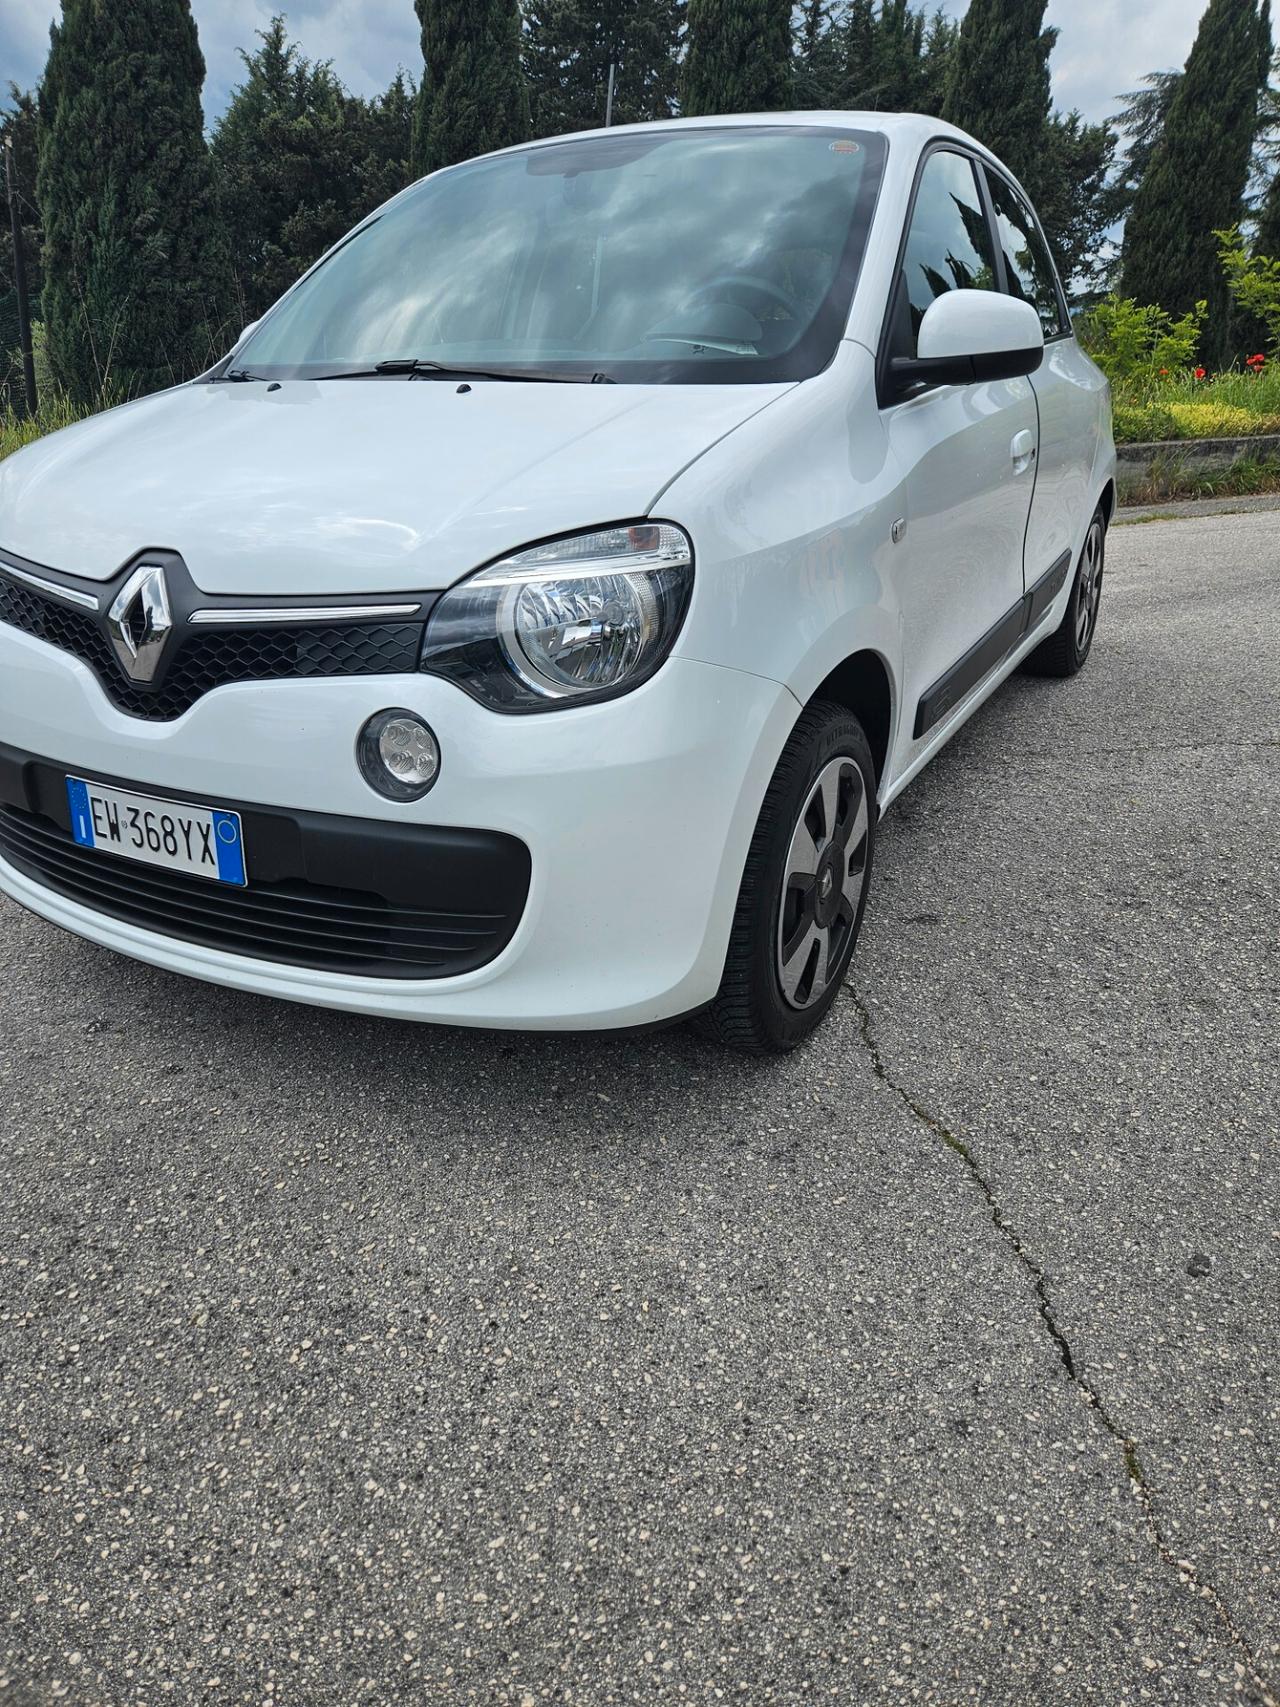 Renault Twingo 1.0 benzina